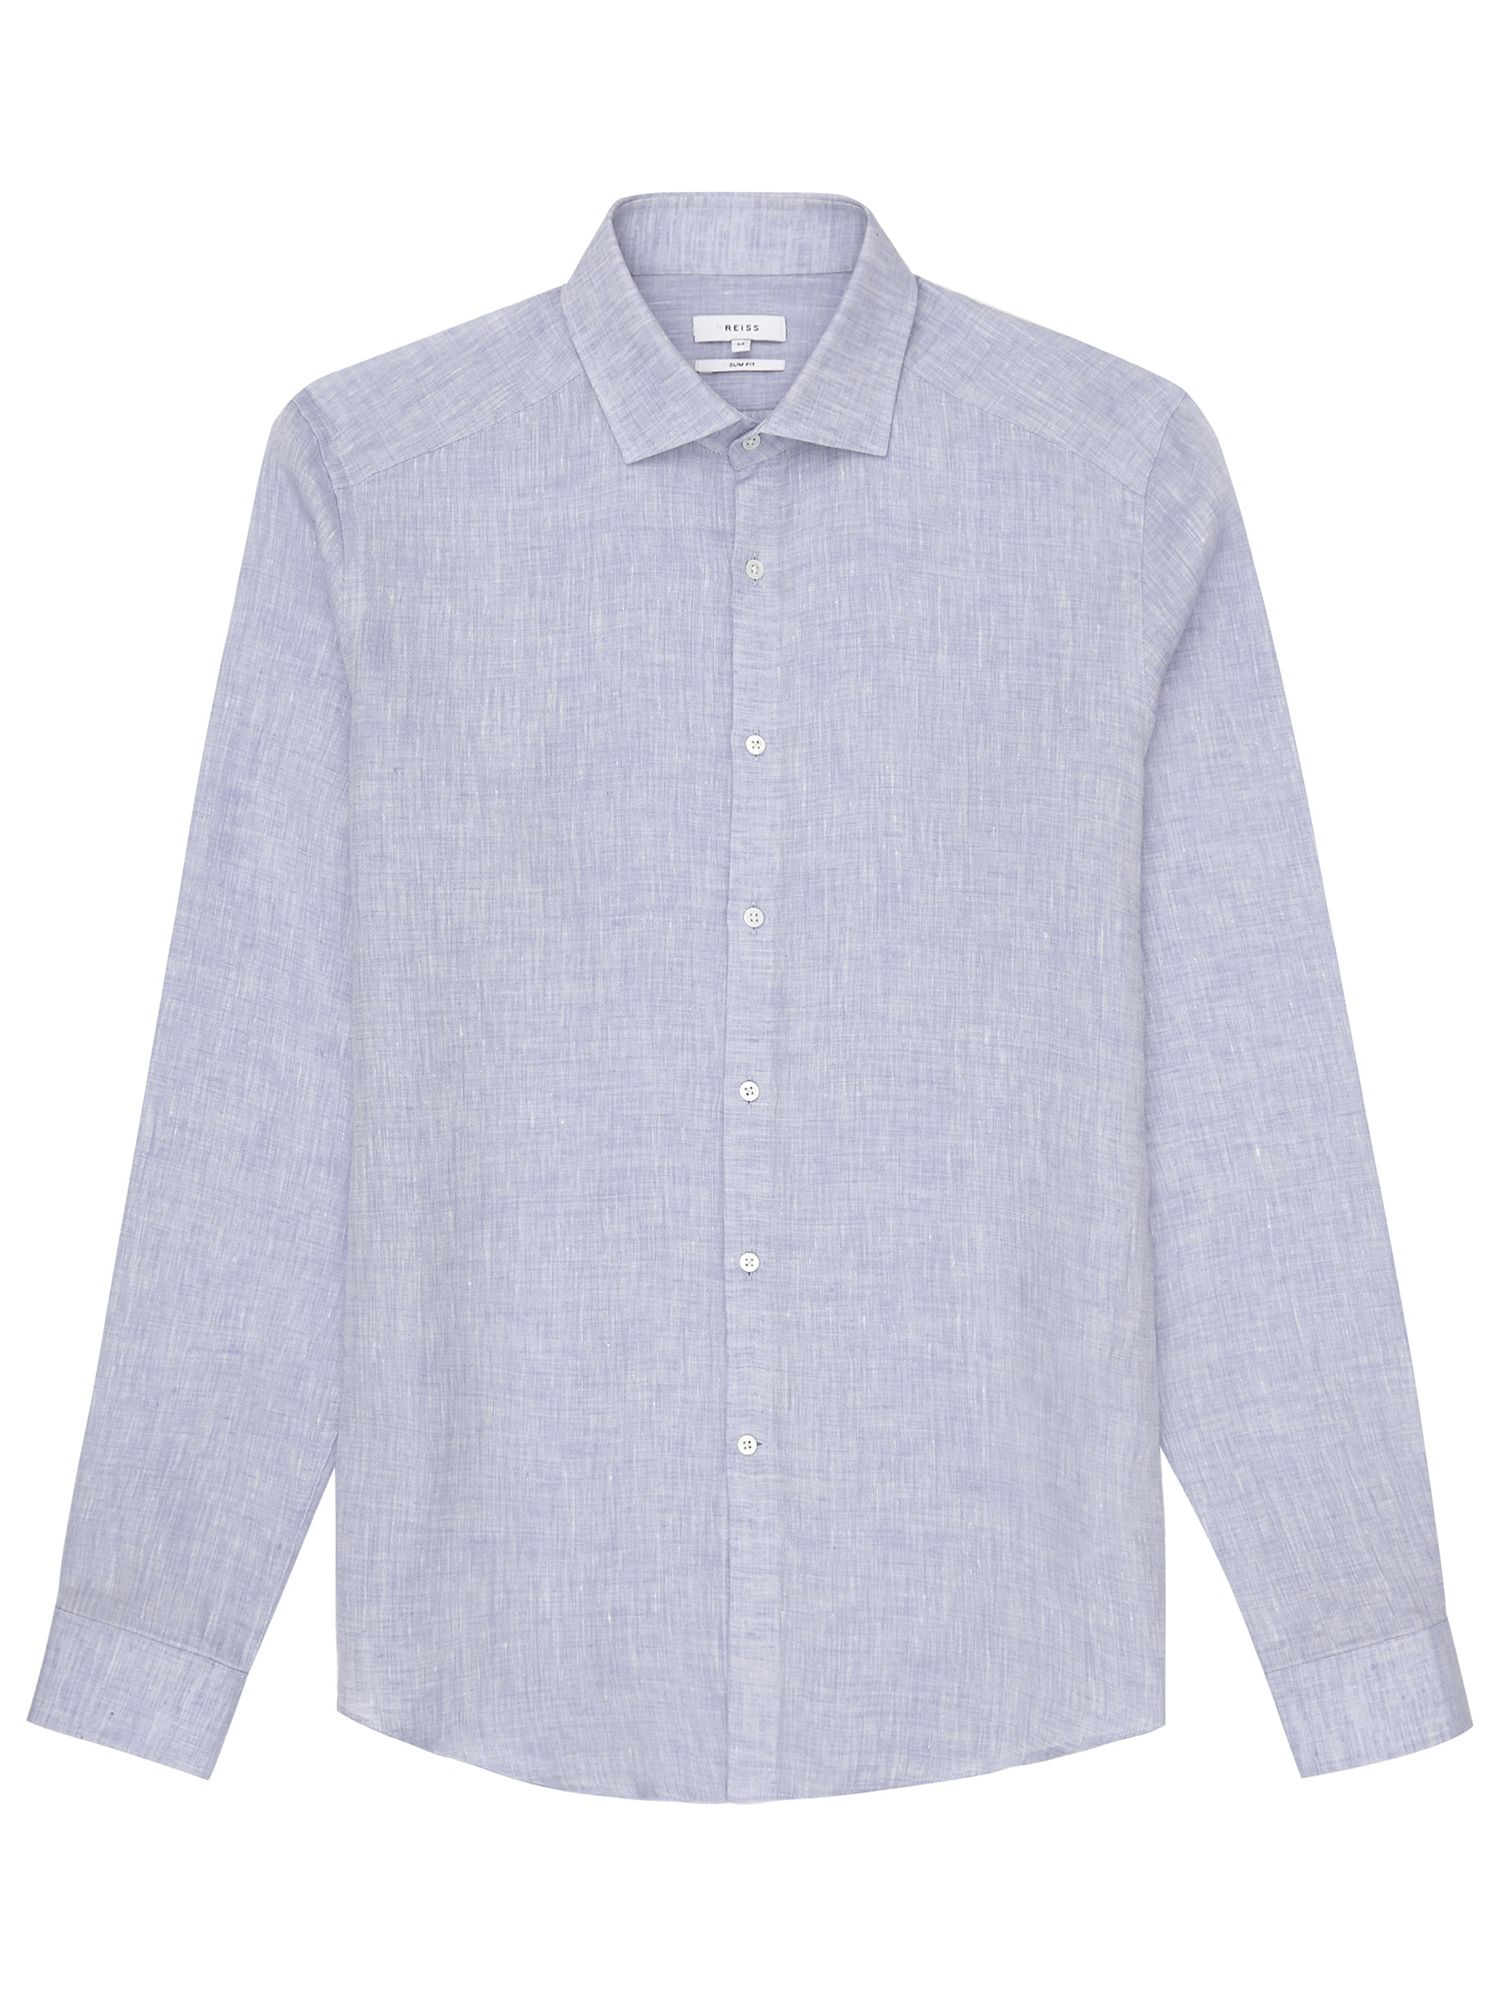 Reiss Perdu Regular Fit Textured Linen Shirt, Soft Blue